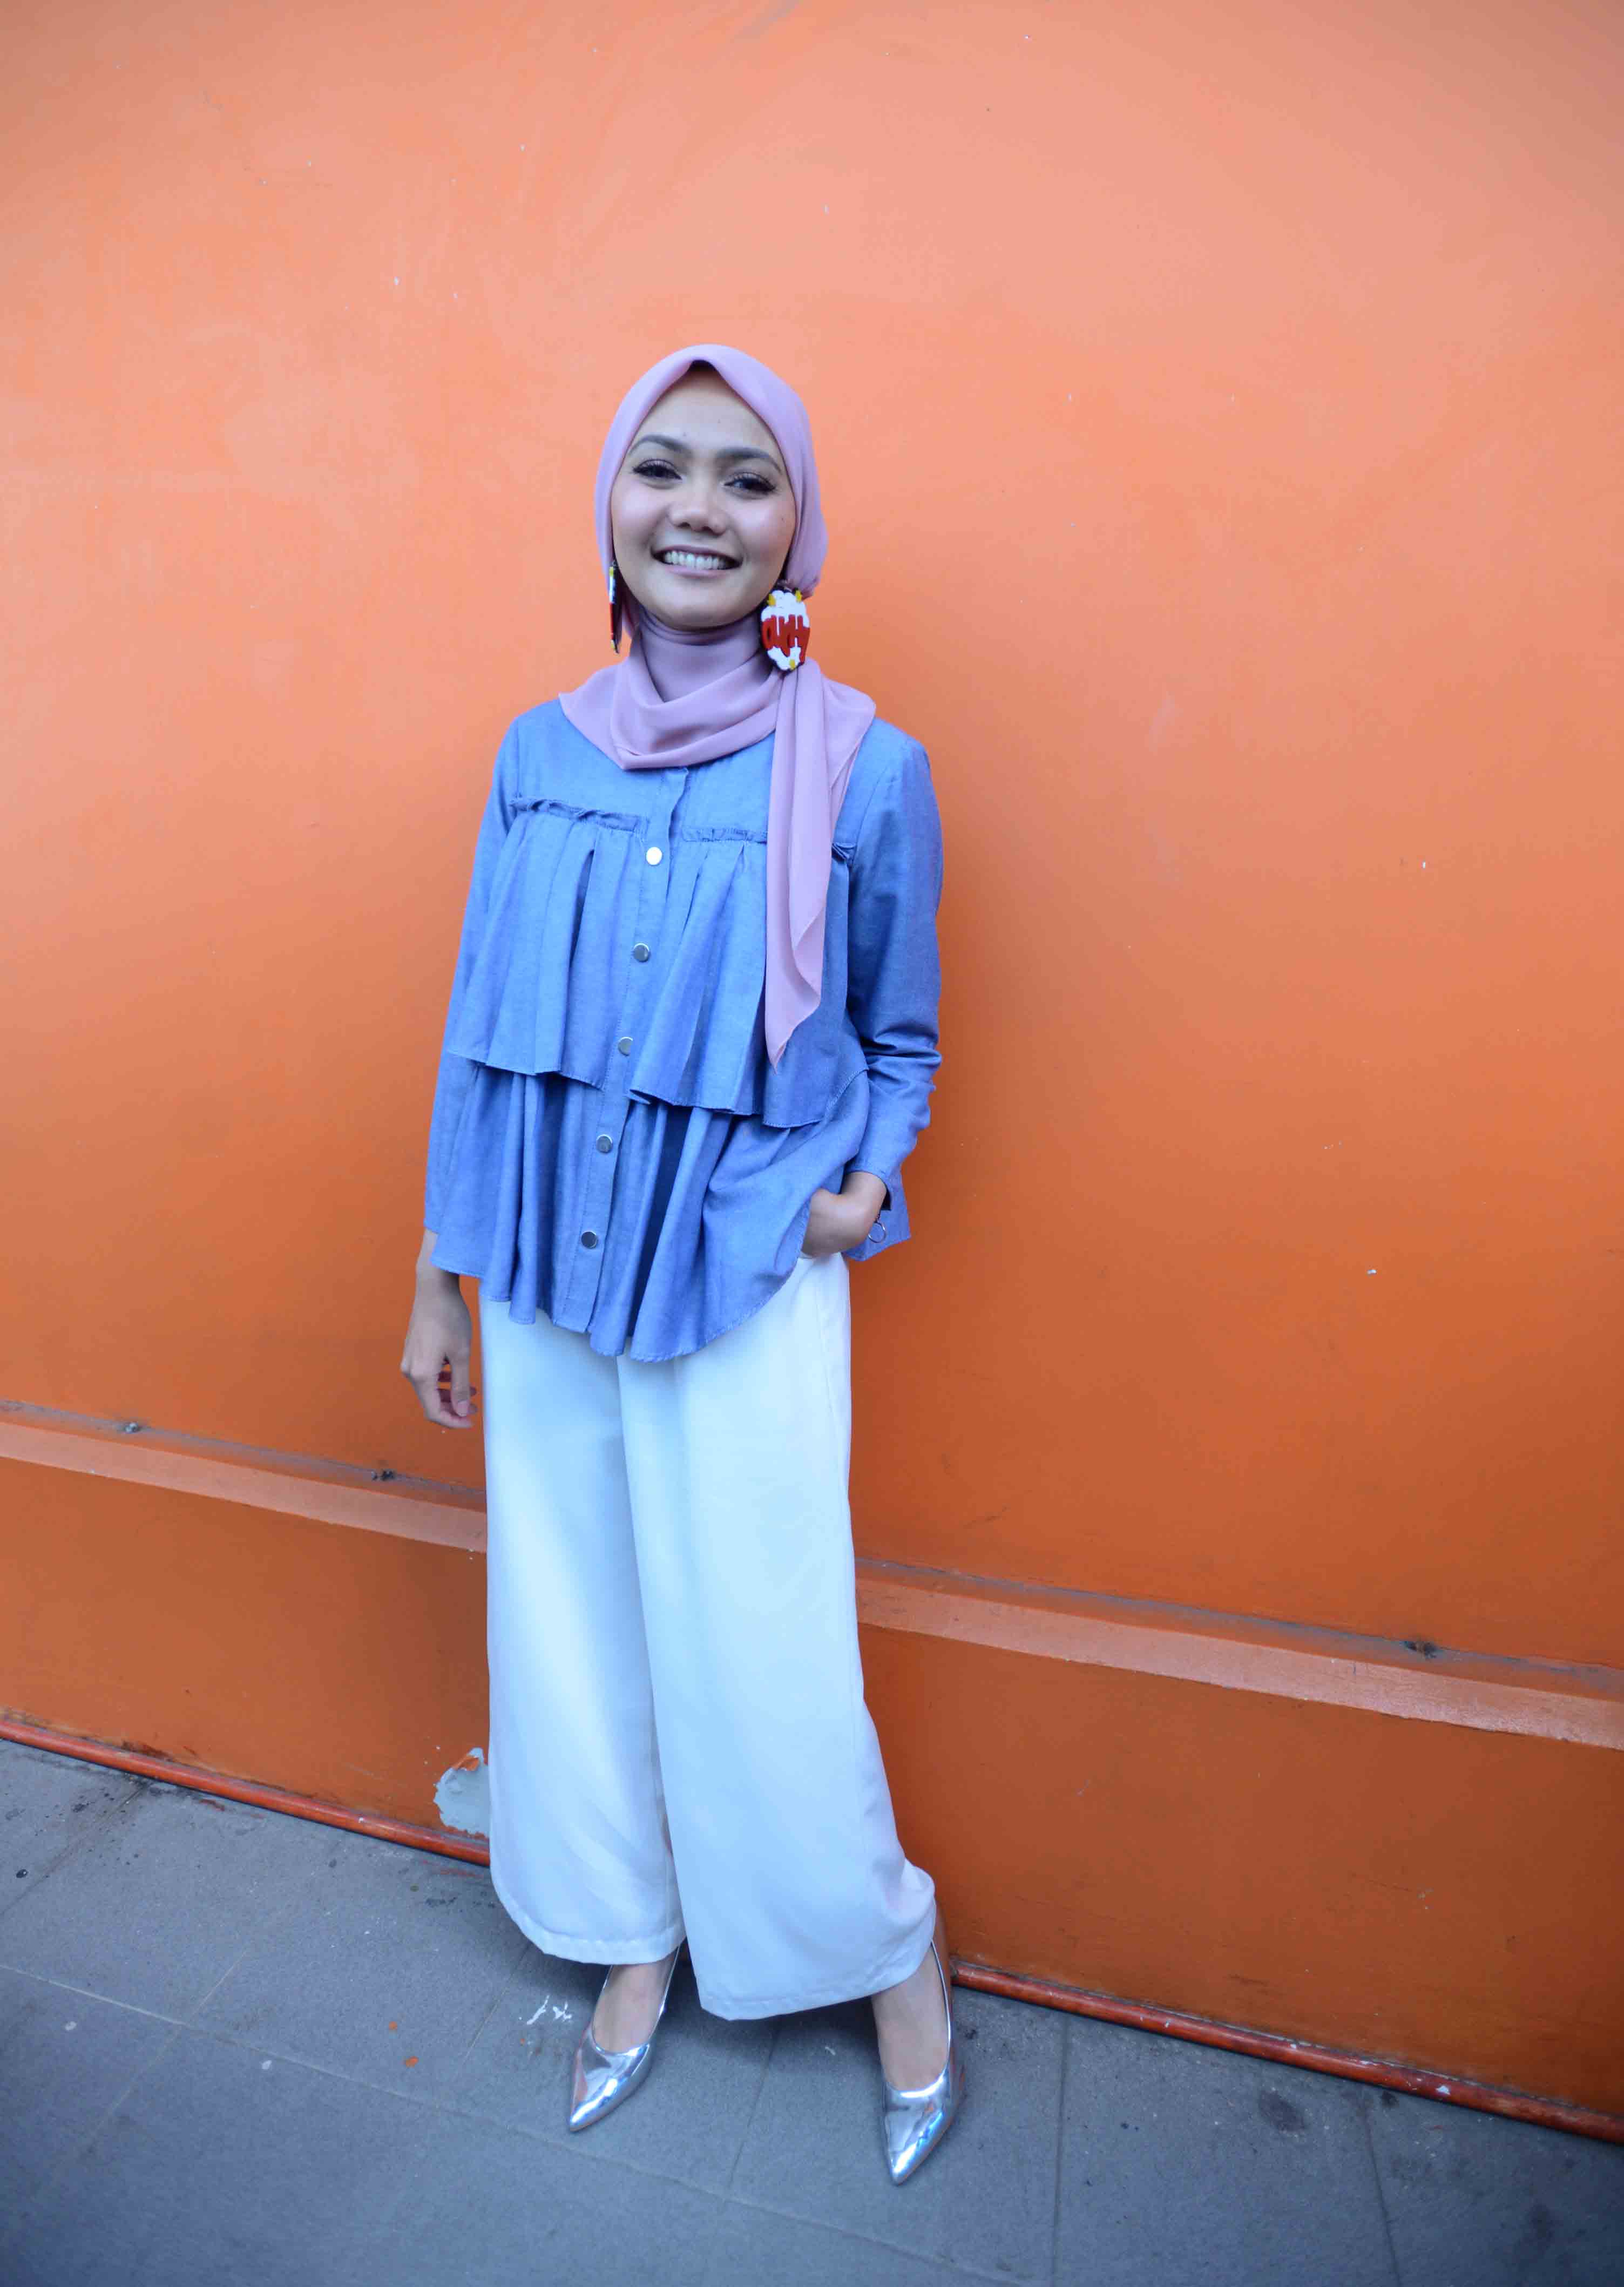 Tanggalnya Hijab Rina Nose Dreamcoid